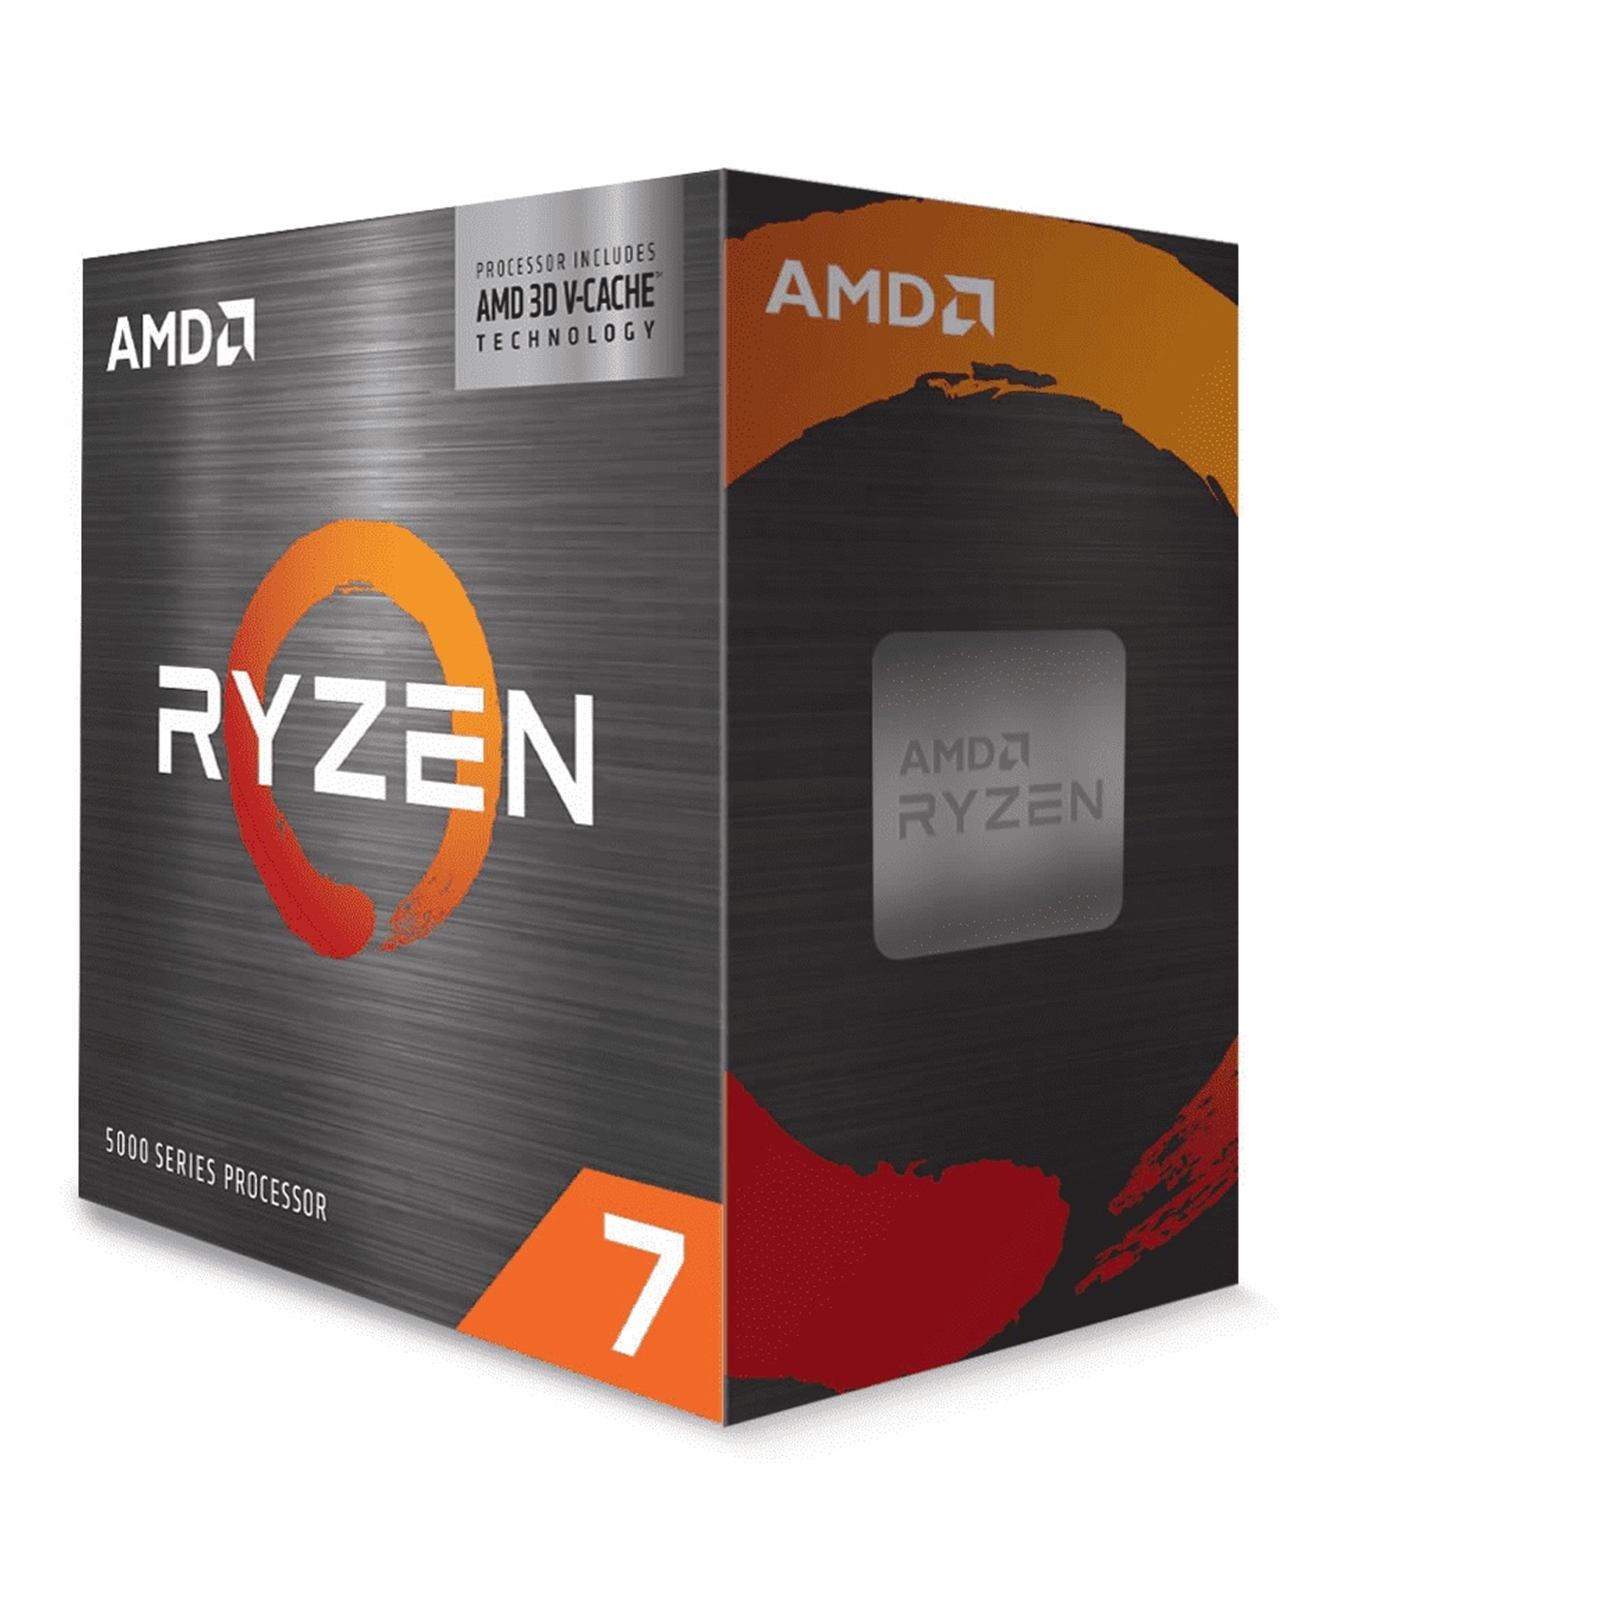 AMD Ryzen 7 5800X3D 3.4GHz 8 Core AM4 Processor, 16 Threads, 4.5GHz Boost